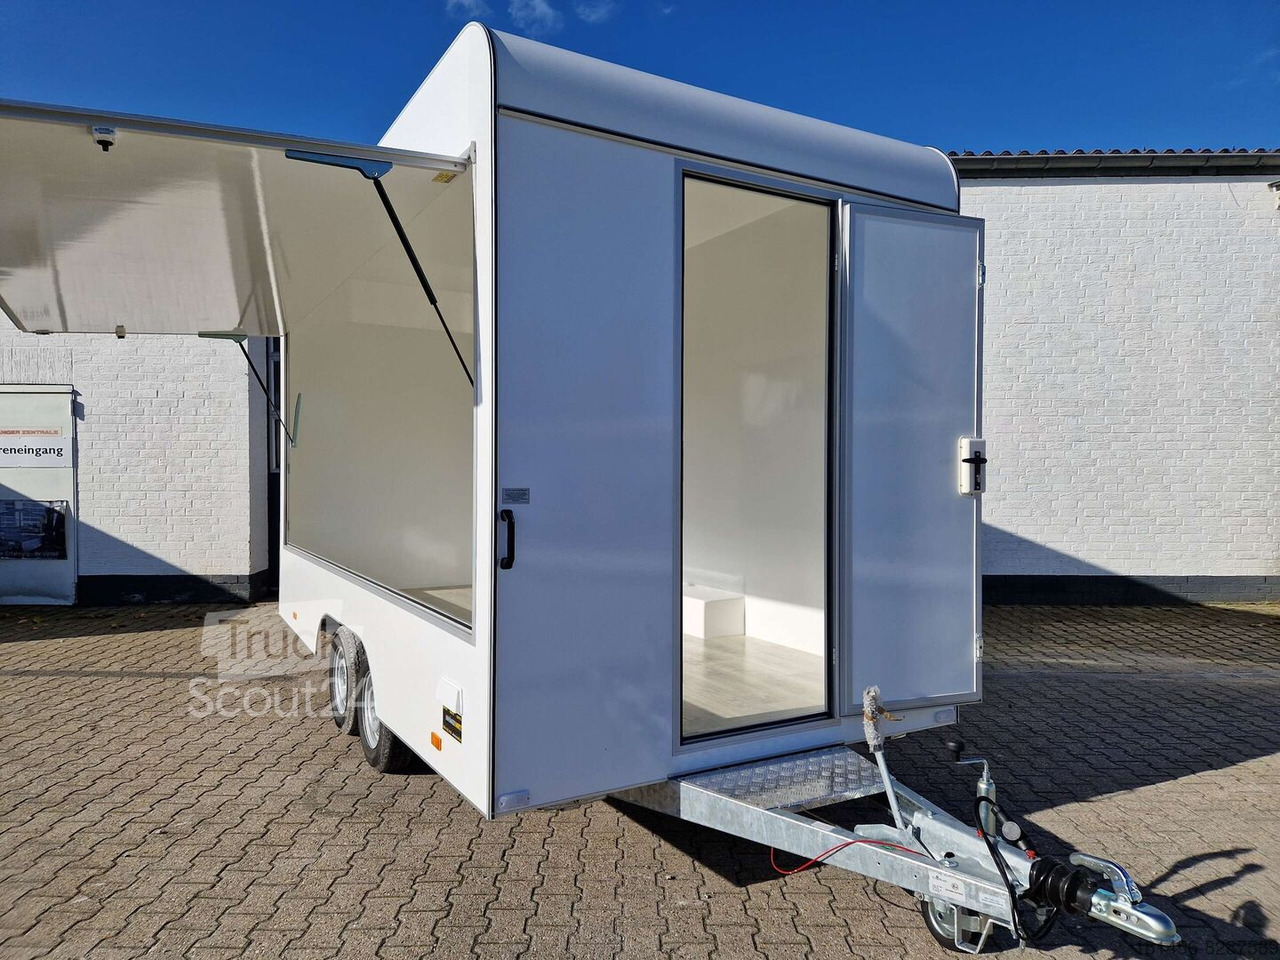 Aero Retro Verkaufsanhänger Leerwagen für diy Ausbau 420x200x230cm sofort - Vending trailer: picture 3